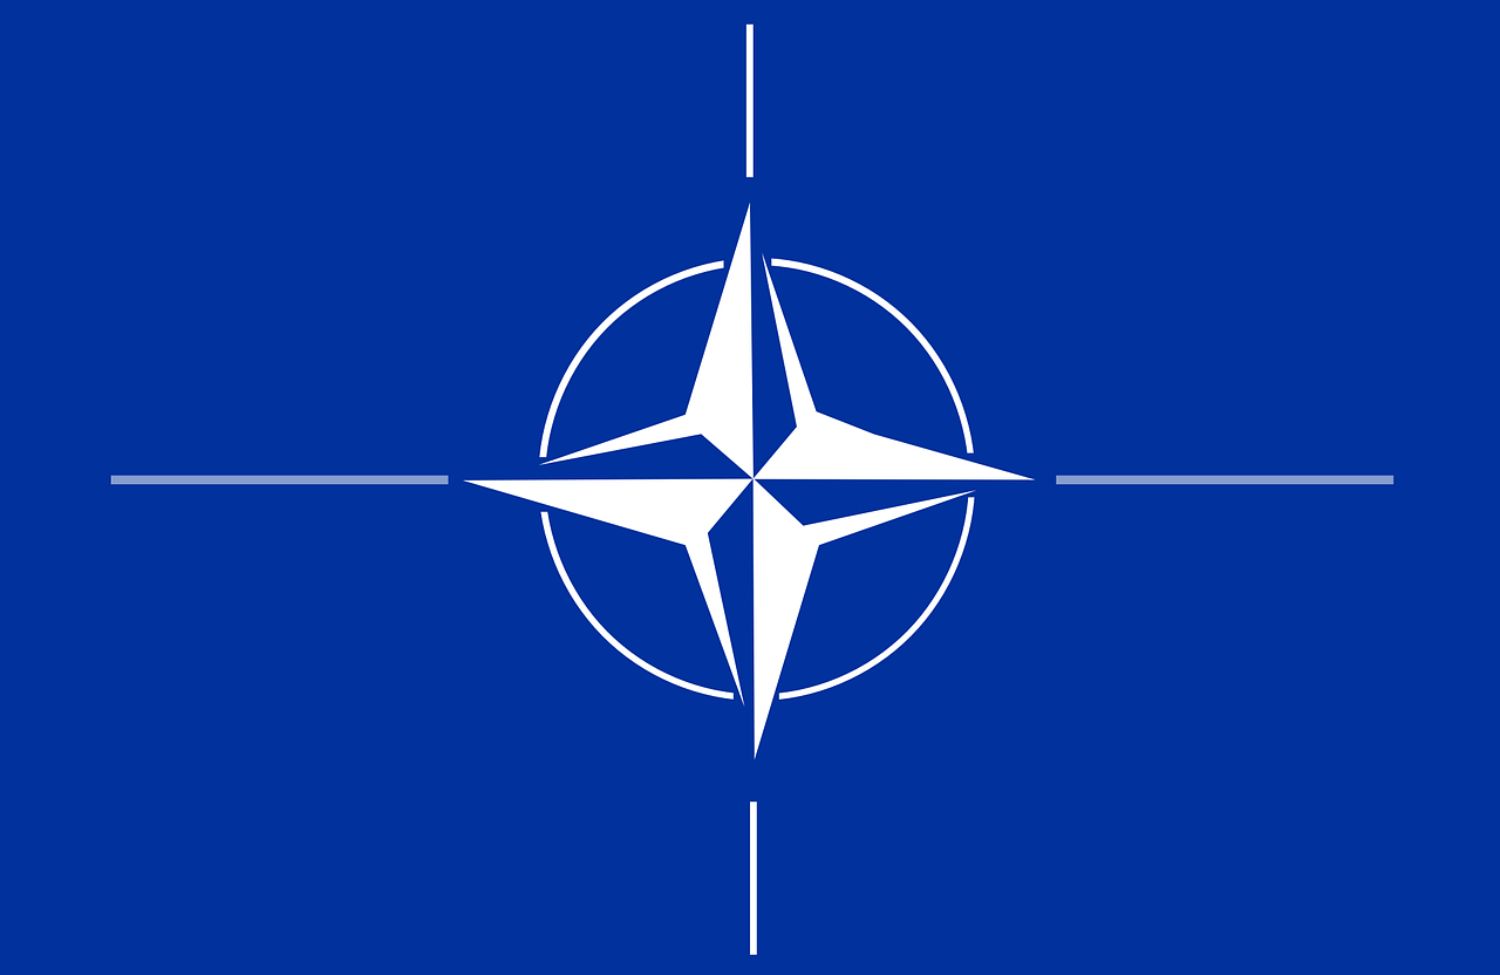 Flaga NATO.